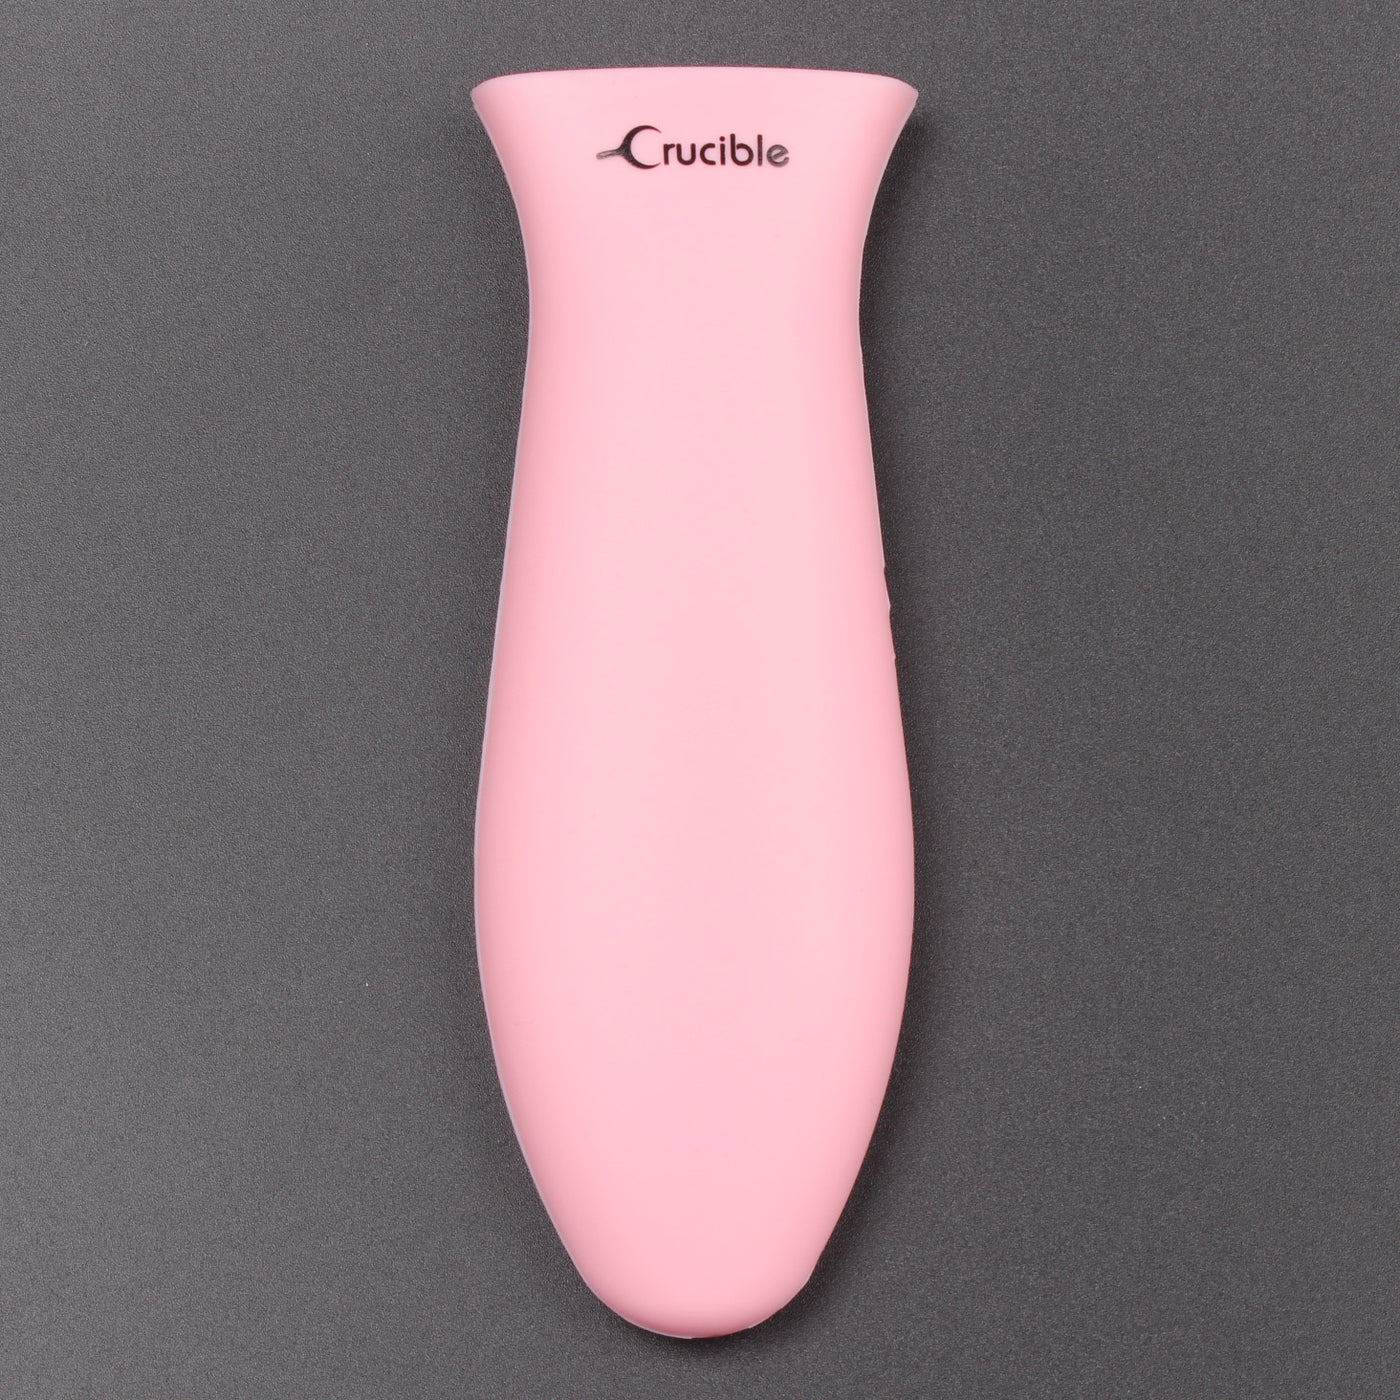 Силиконовый держатель для горячей ручки, прихватка (розовая большая), рукоятка, крышка ручки